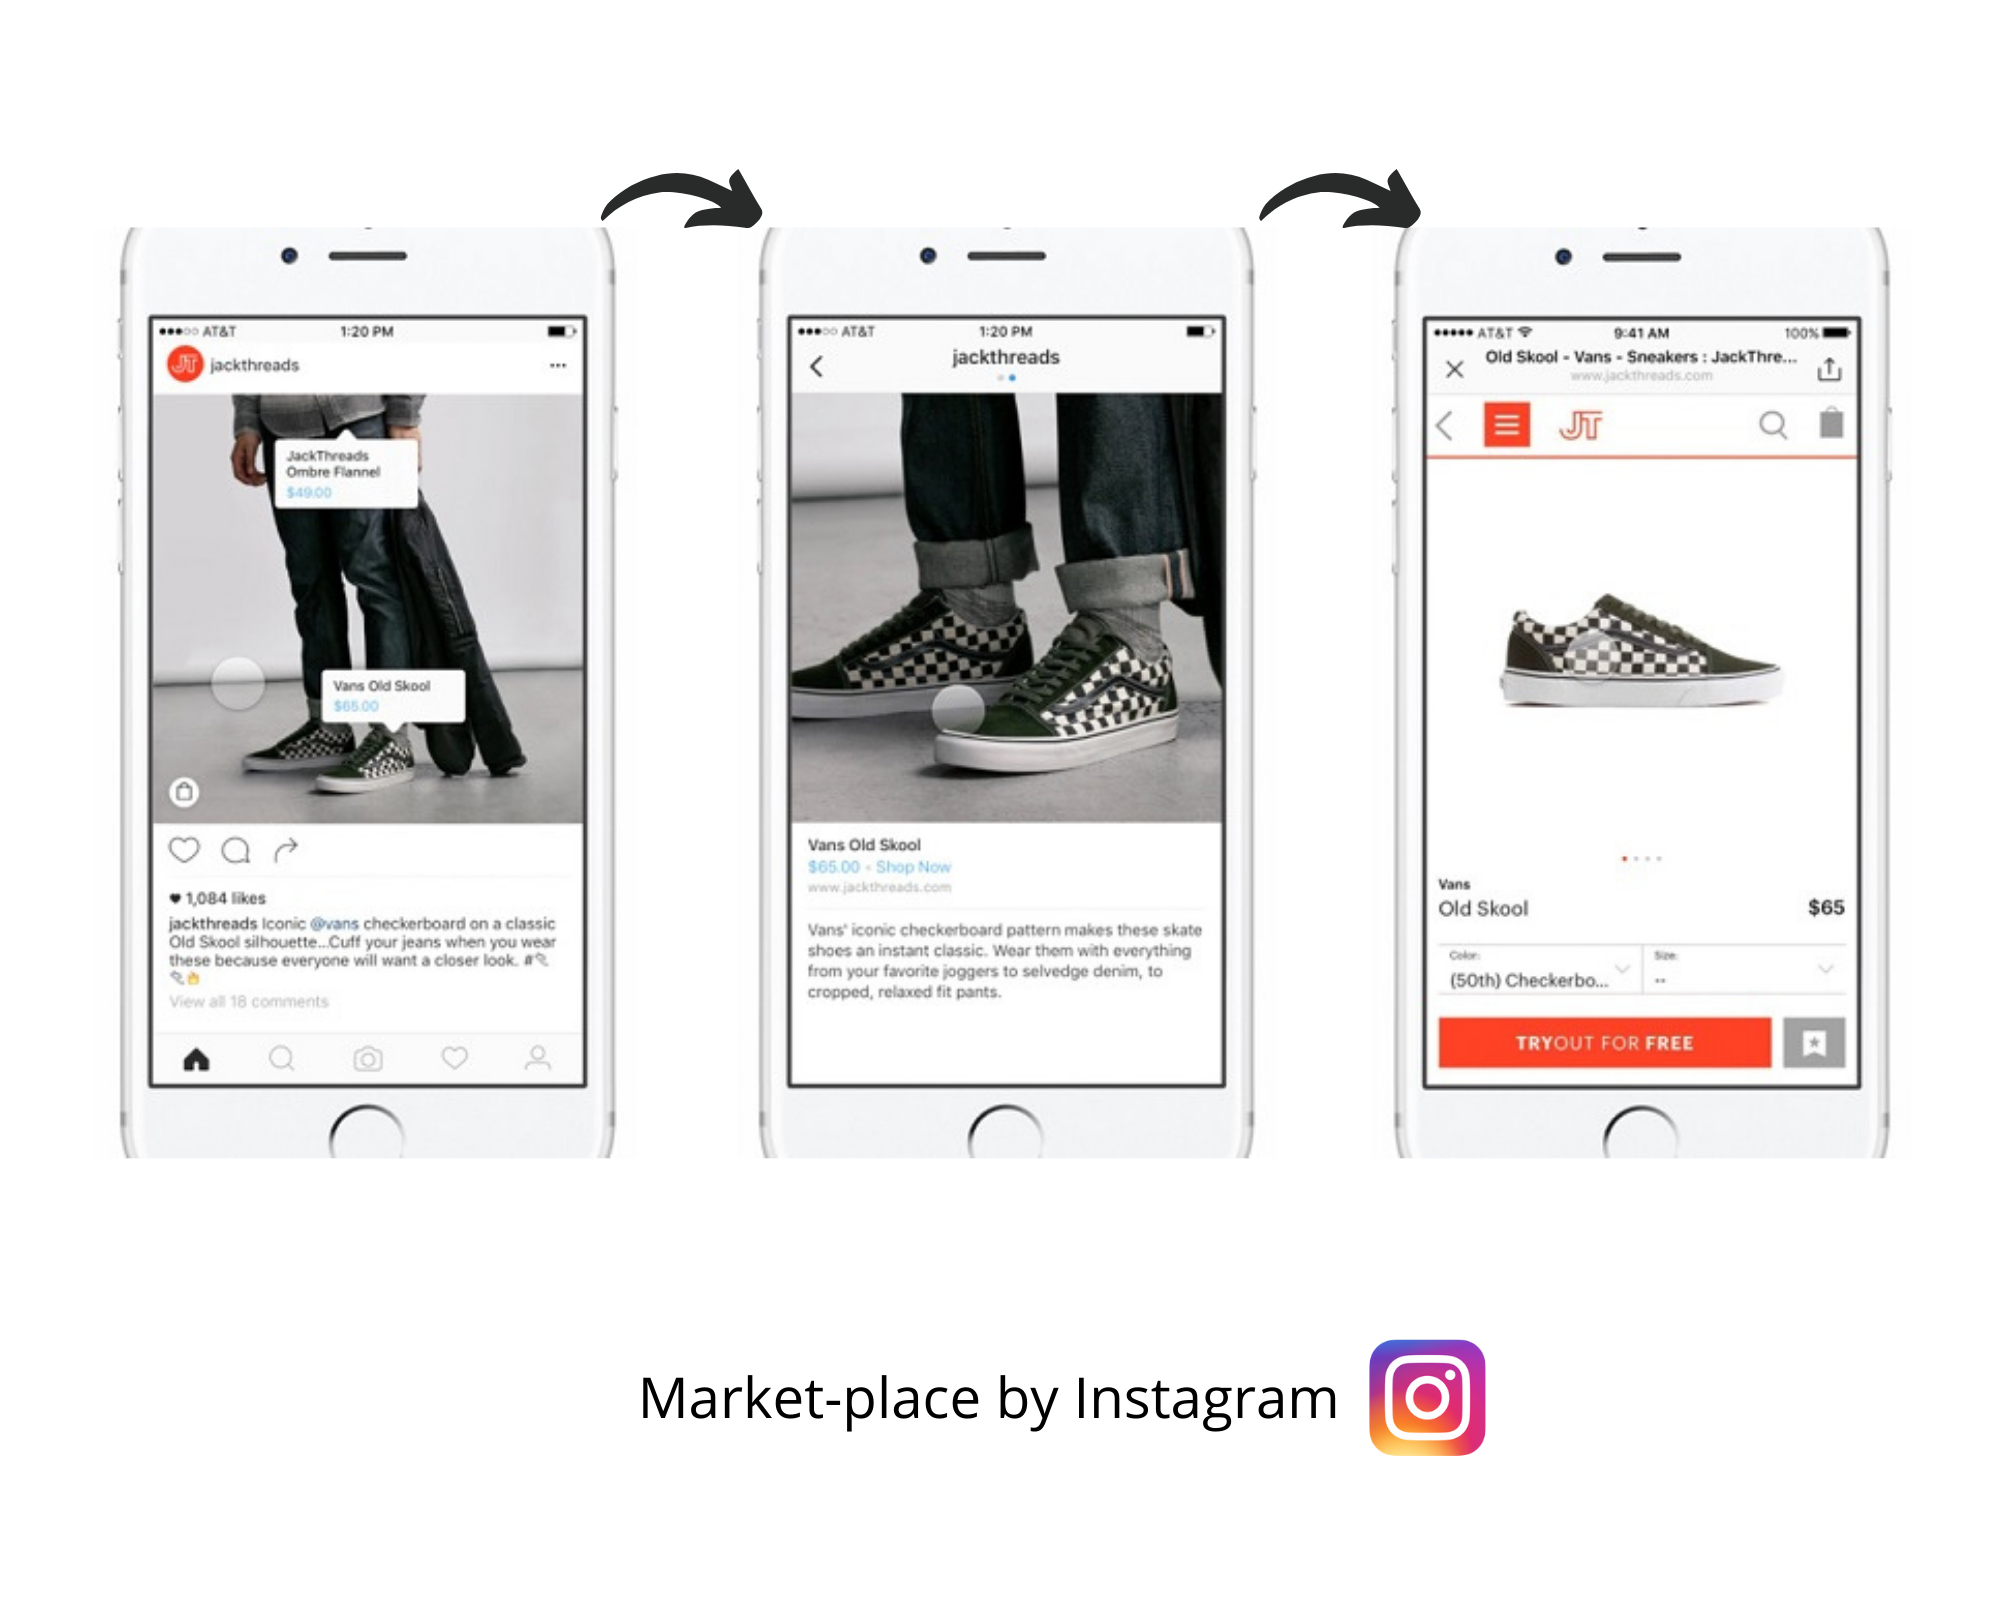 Exemple de pages Instagram représentant l'achat d'un produit directement via la fonctionnalité Market-place de l'application Instagram